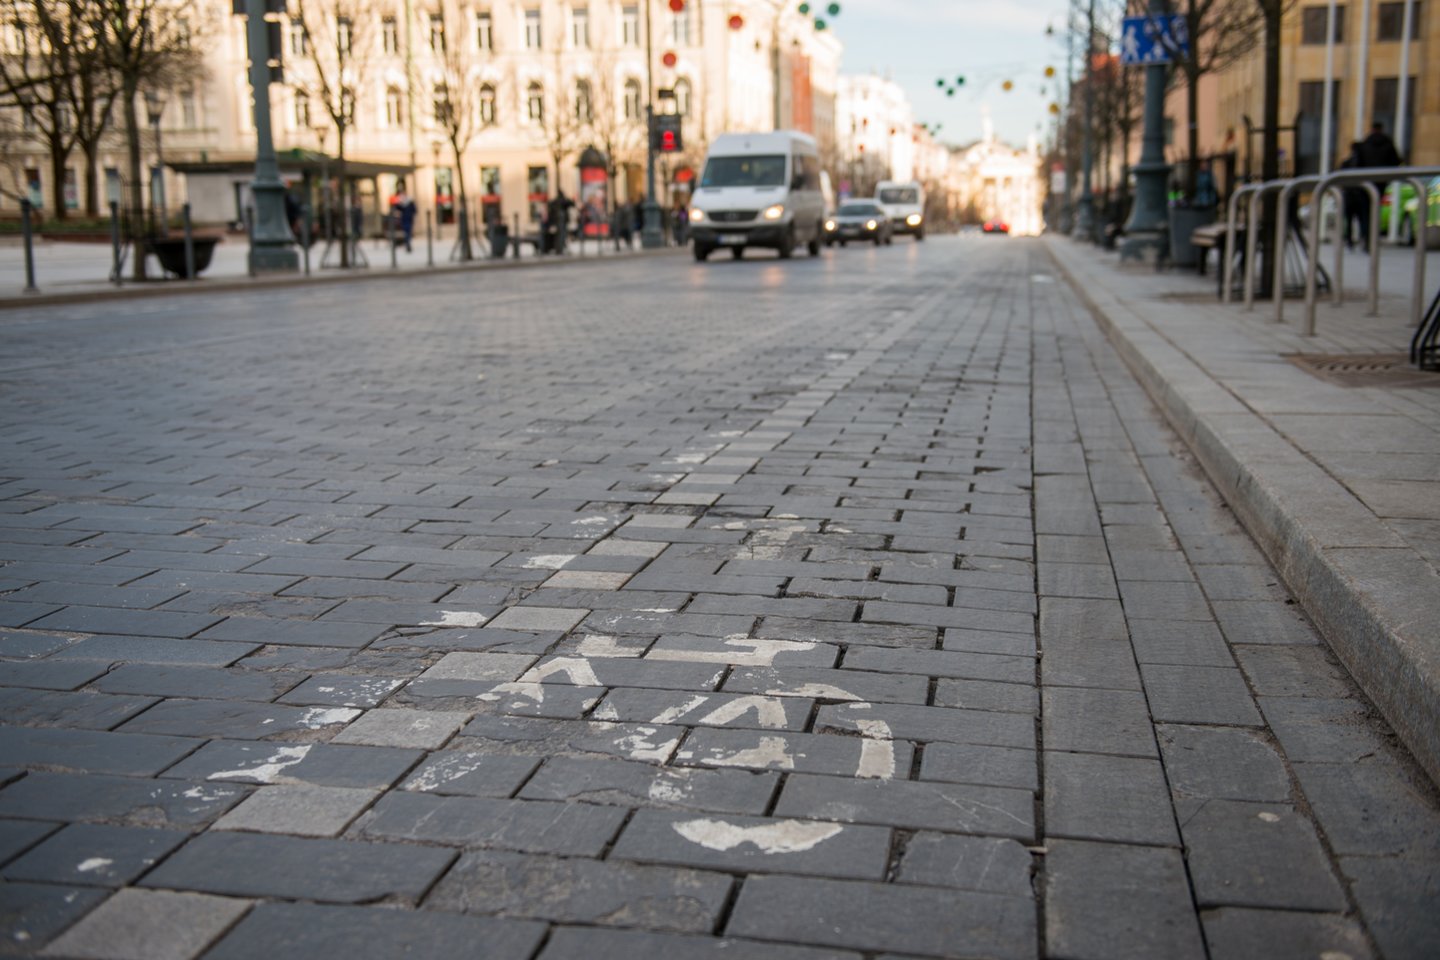 Kitais metais bus atnaujintos Lietuvos pėsčiųjų ir dviračių takų tiesimo rekomendacijos, pasitelkiant geriausia dviračių infrastruktūra garsėjančių Nyderlandų patirtį.<br>J.Stacevičiaus nuotr.